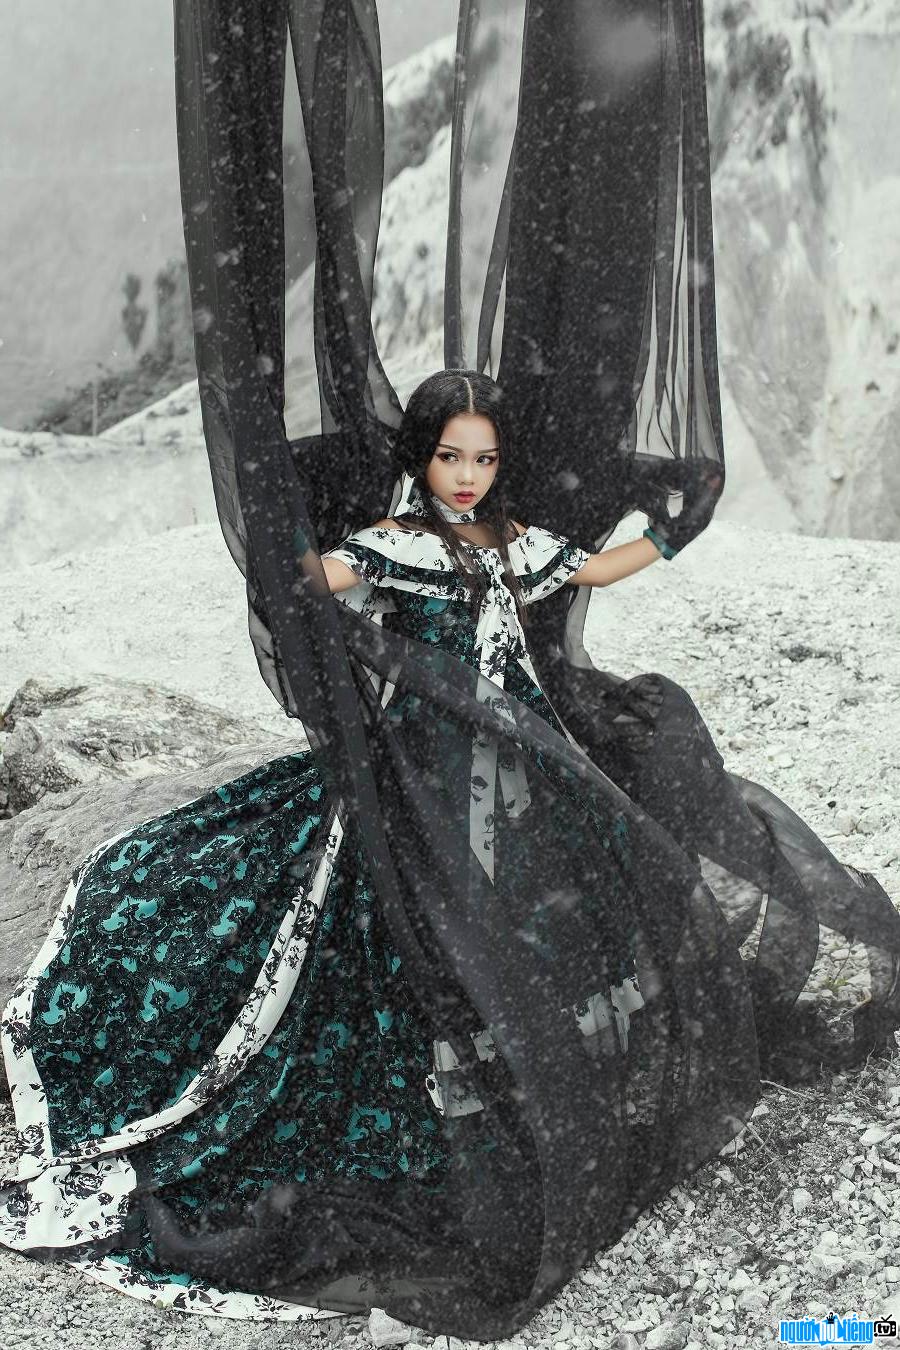 Hình ảnh Lala Bảo Linh hóa thân thành công chúa trong bộ ảnh cổ trang thực hiện tại đèo Đá Trắng